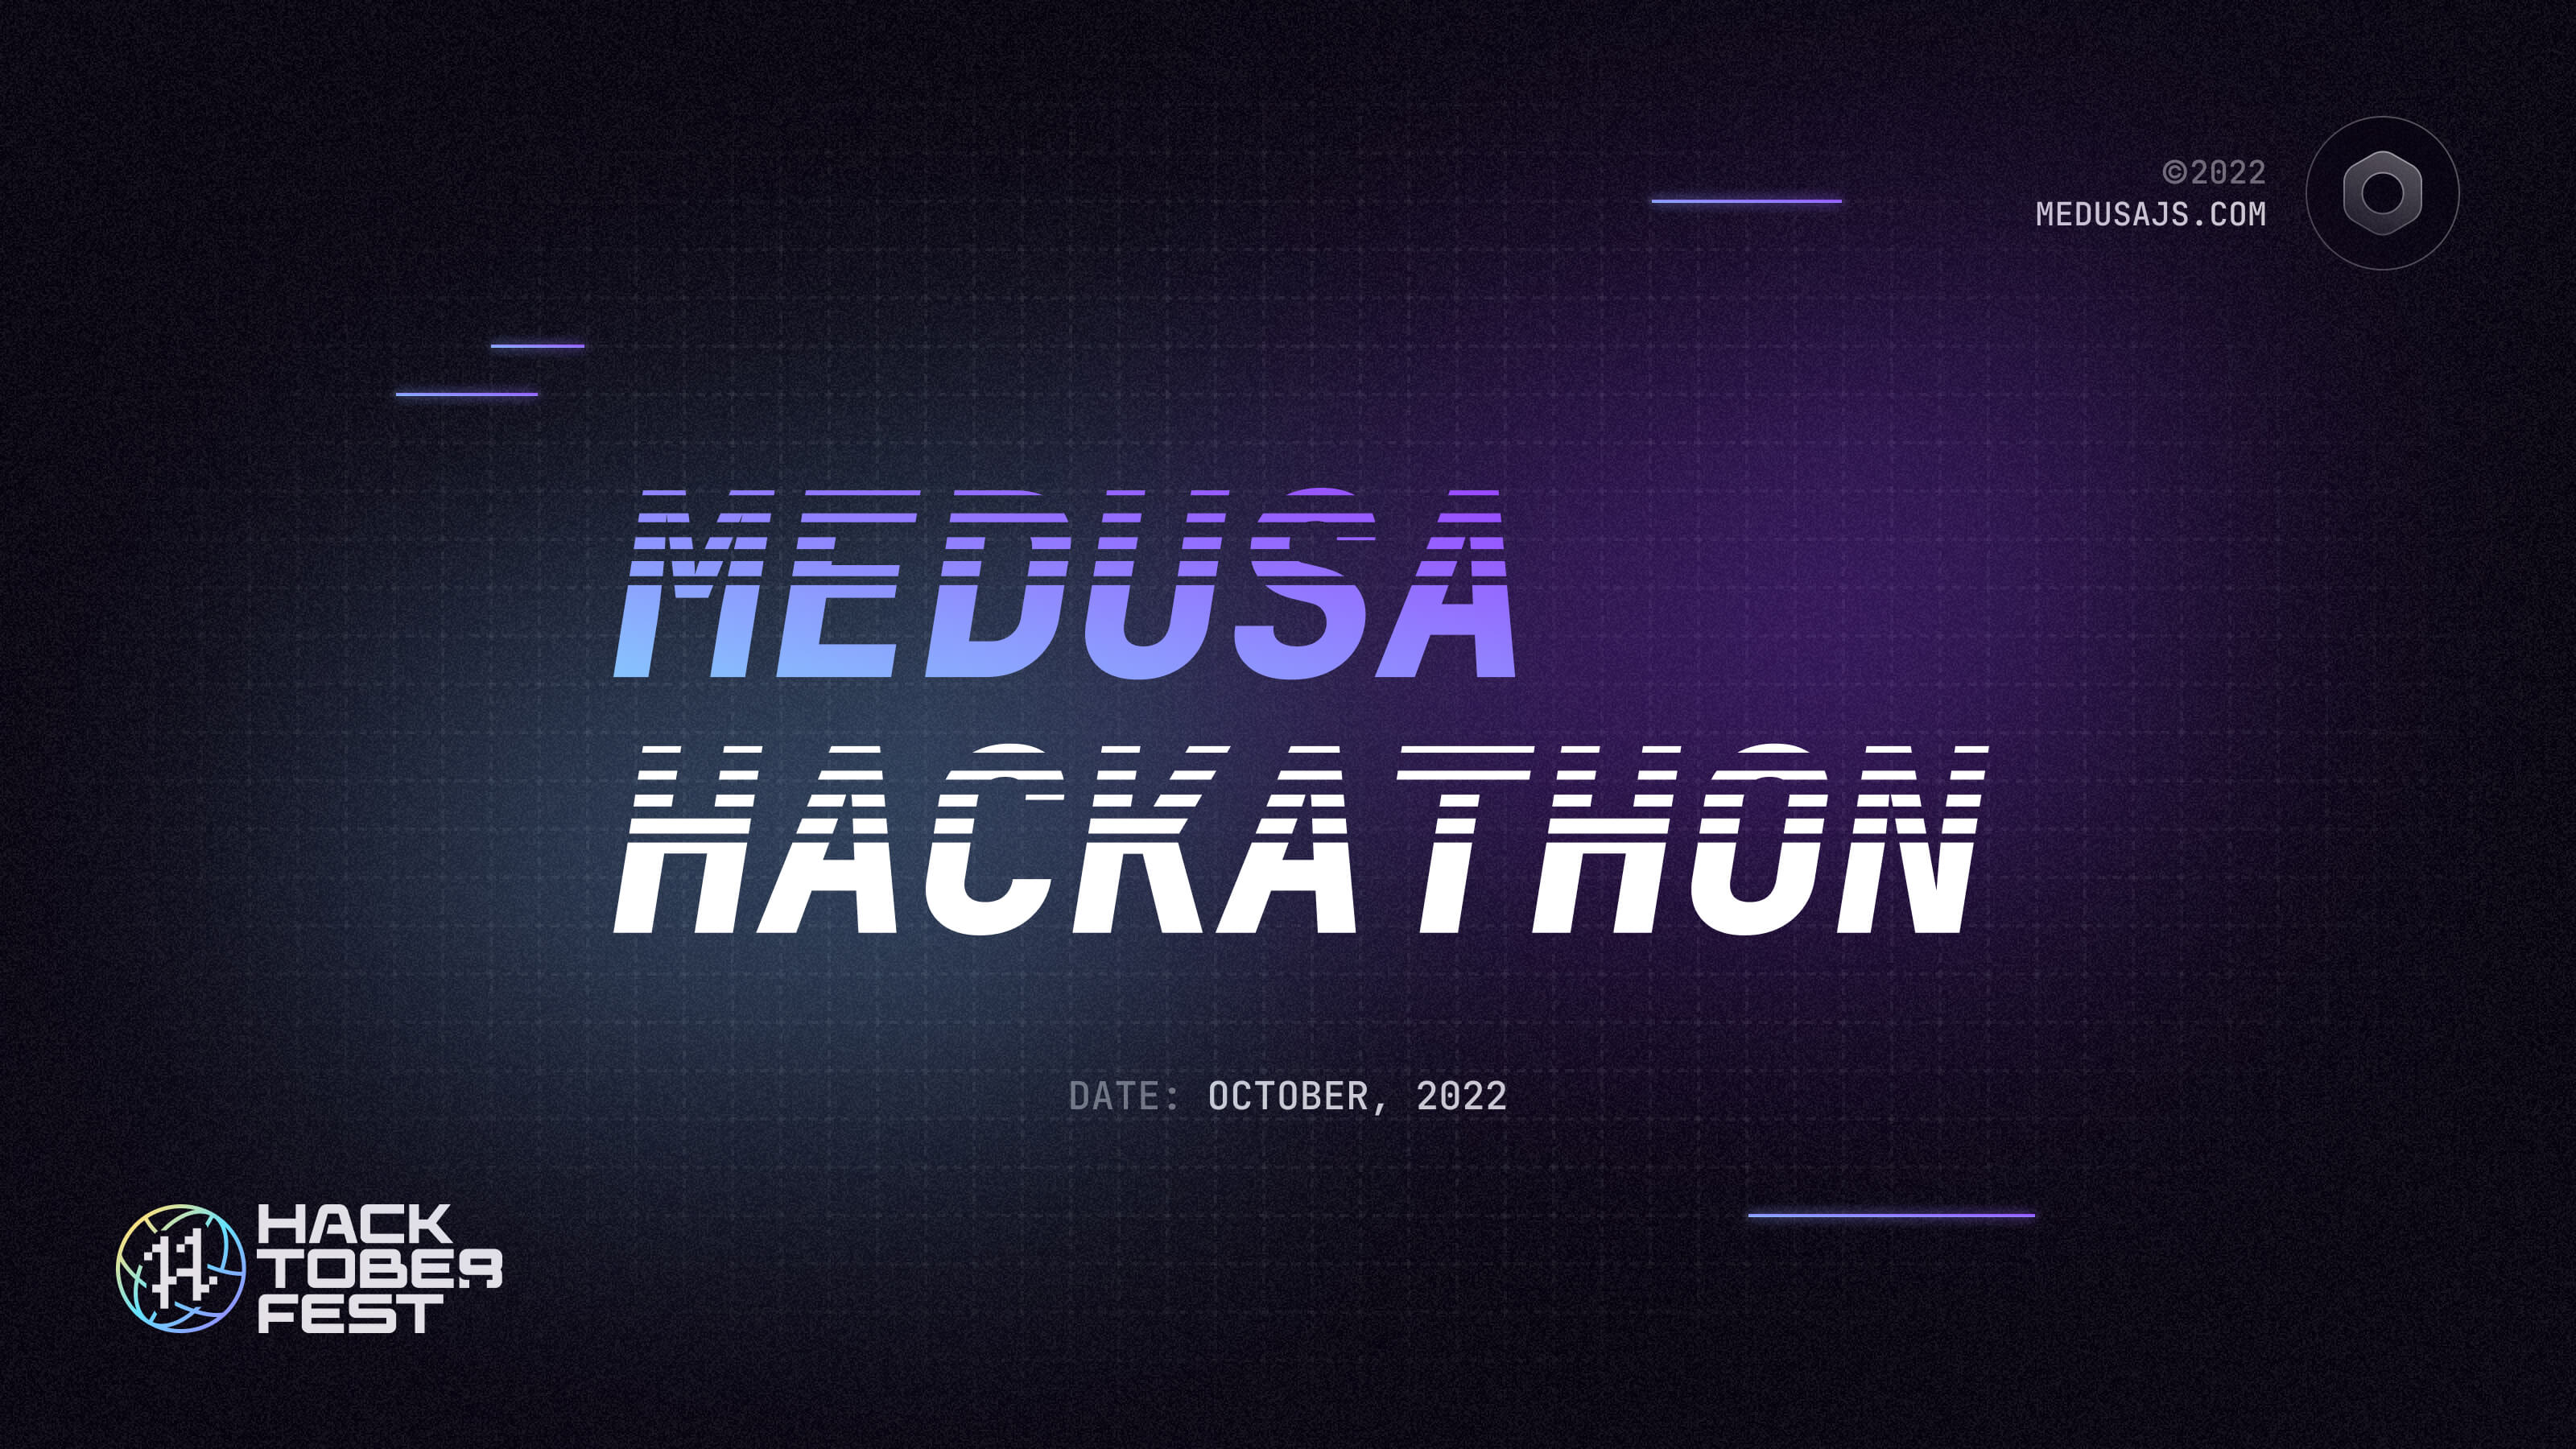 Medusa Hackathon